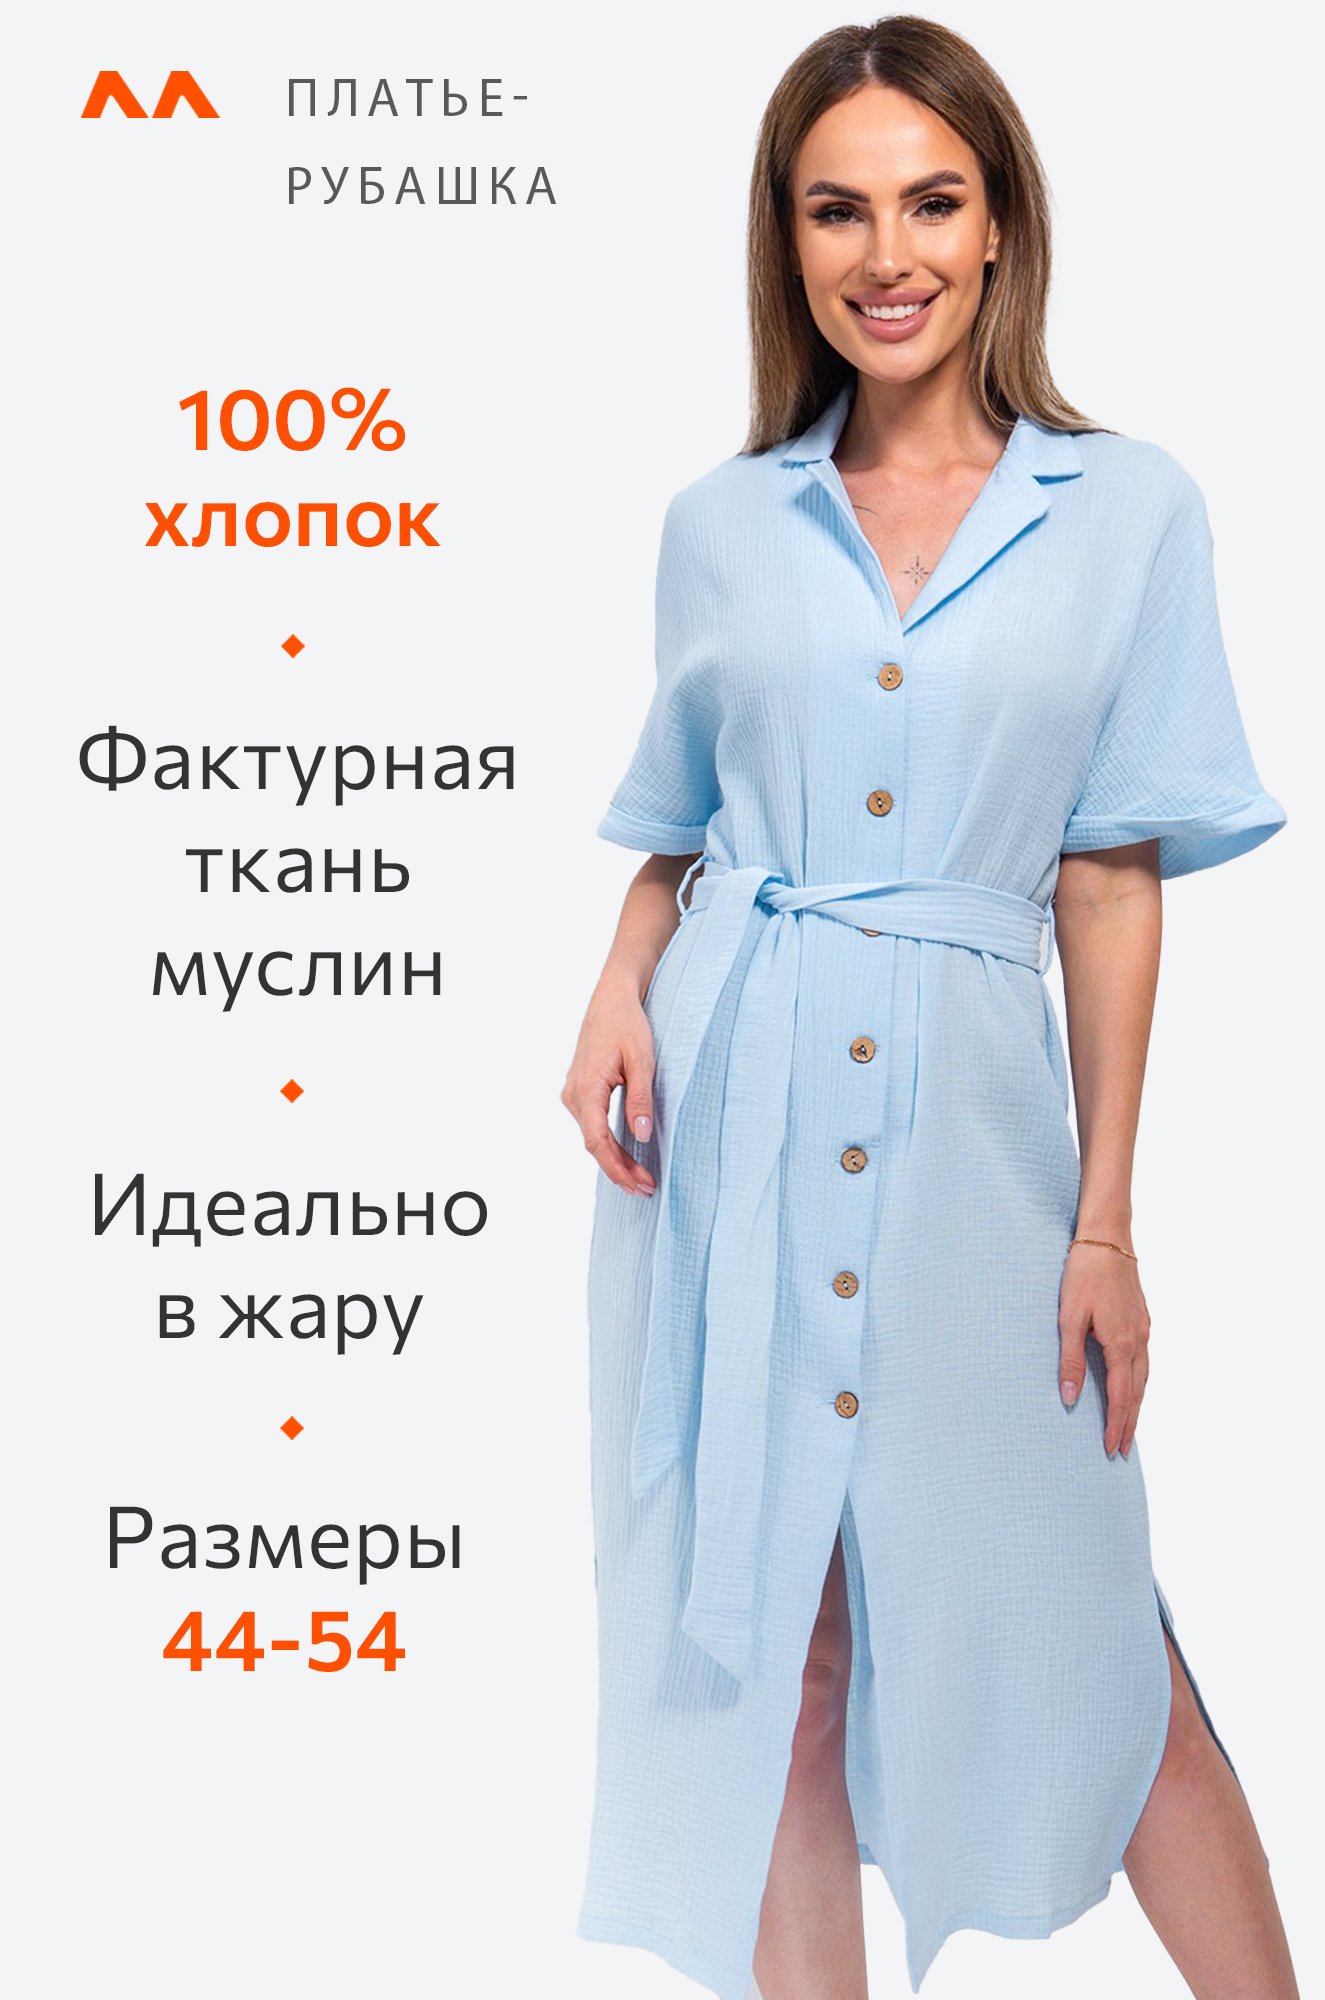 Женское платье-рубашка из муслина Happy Fox